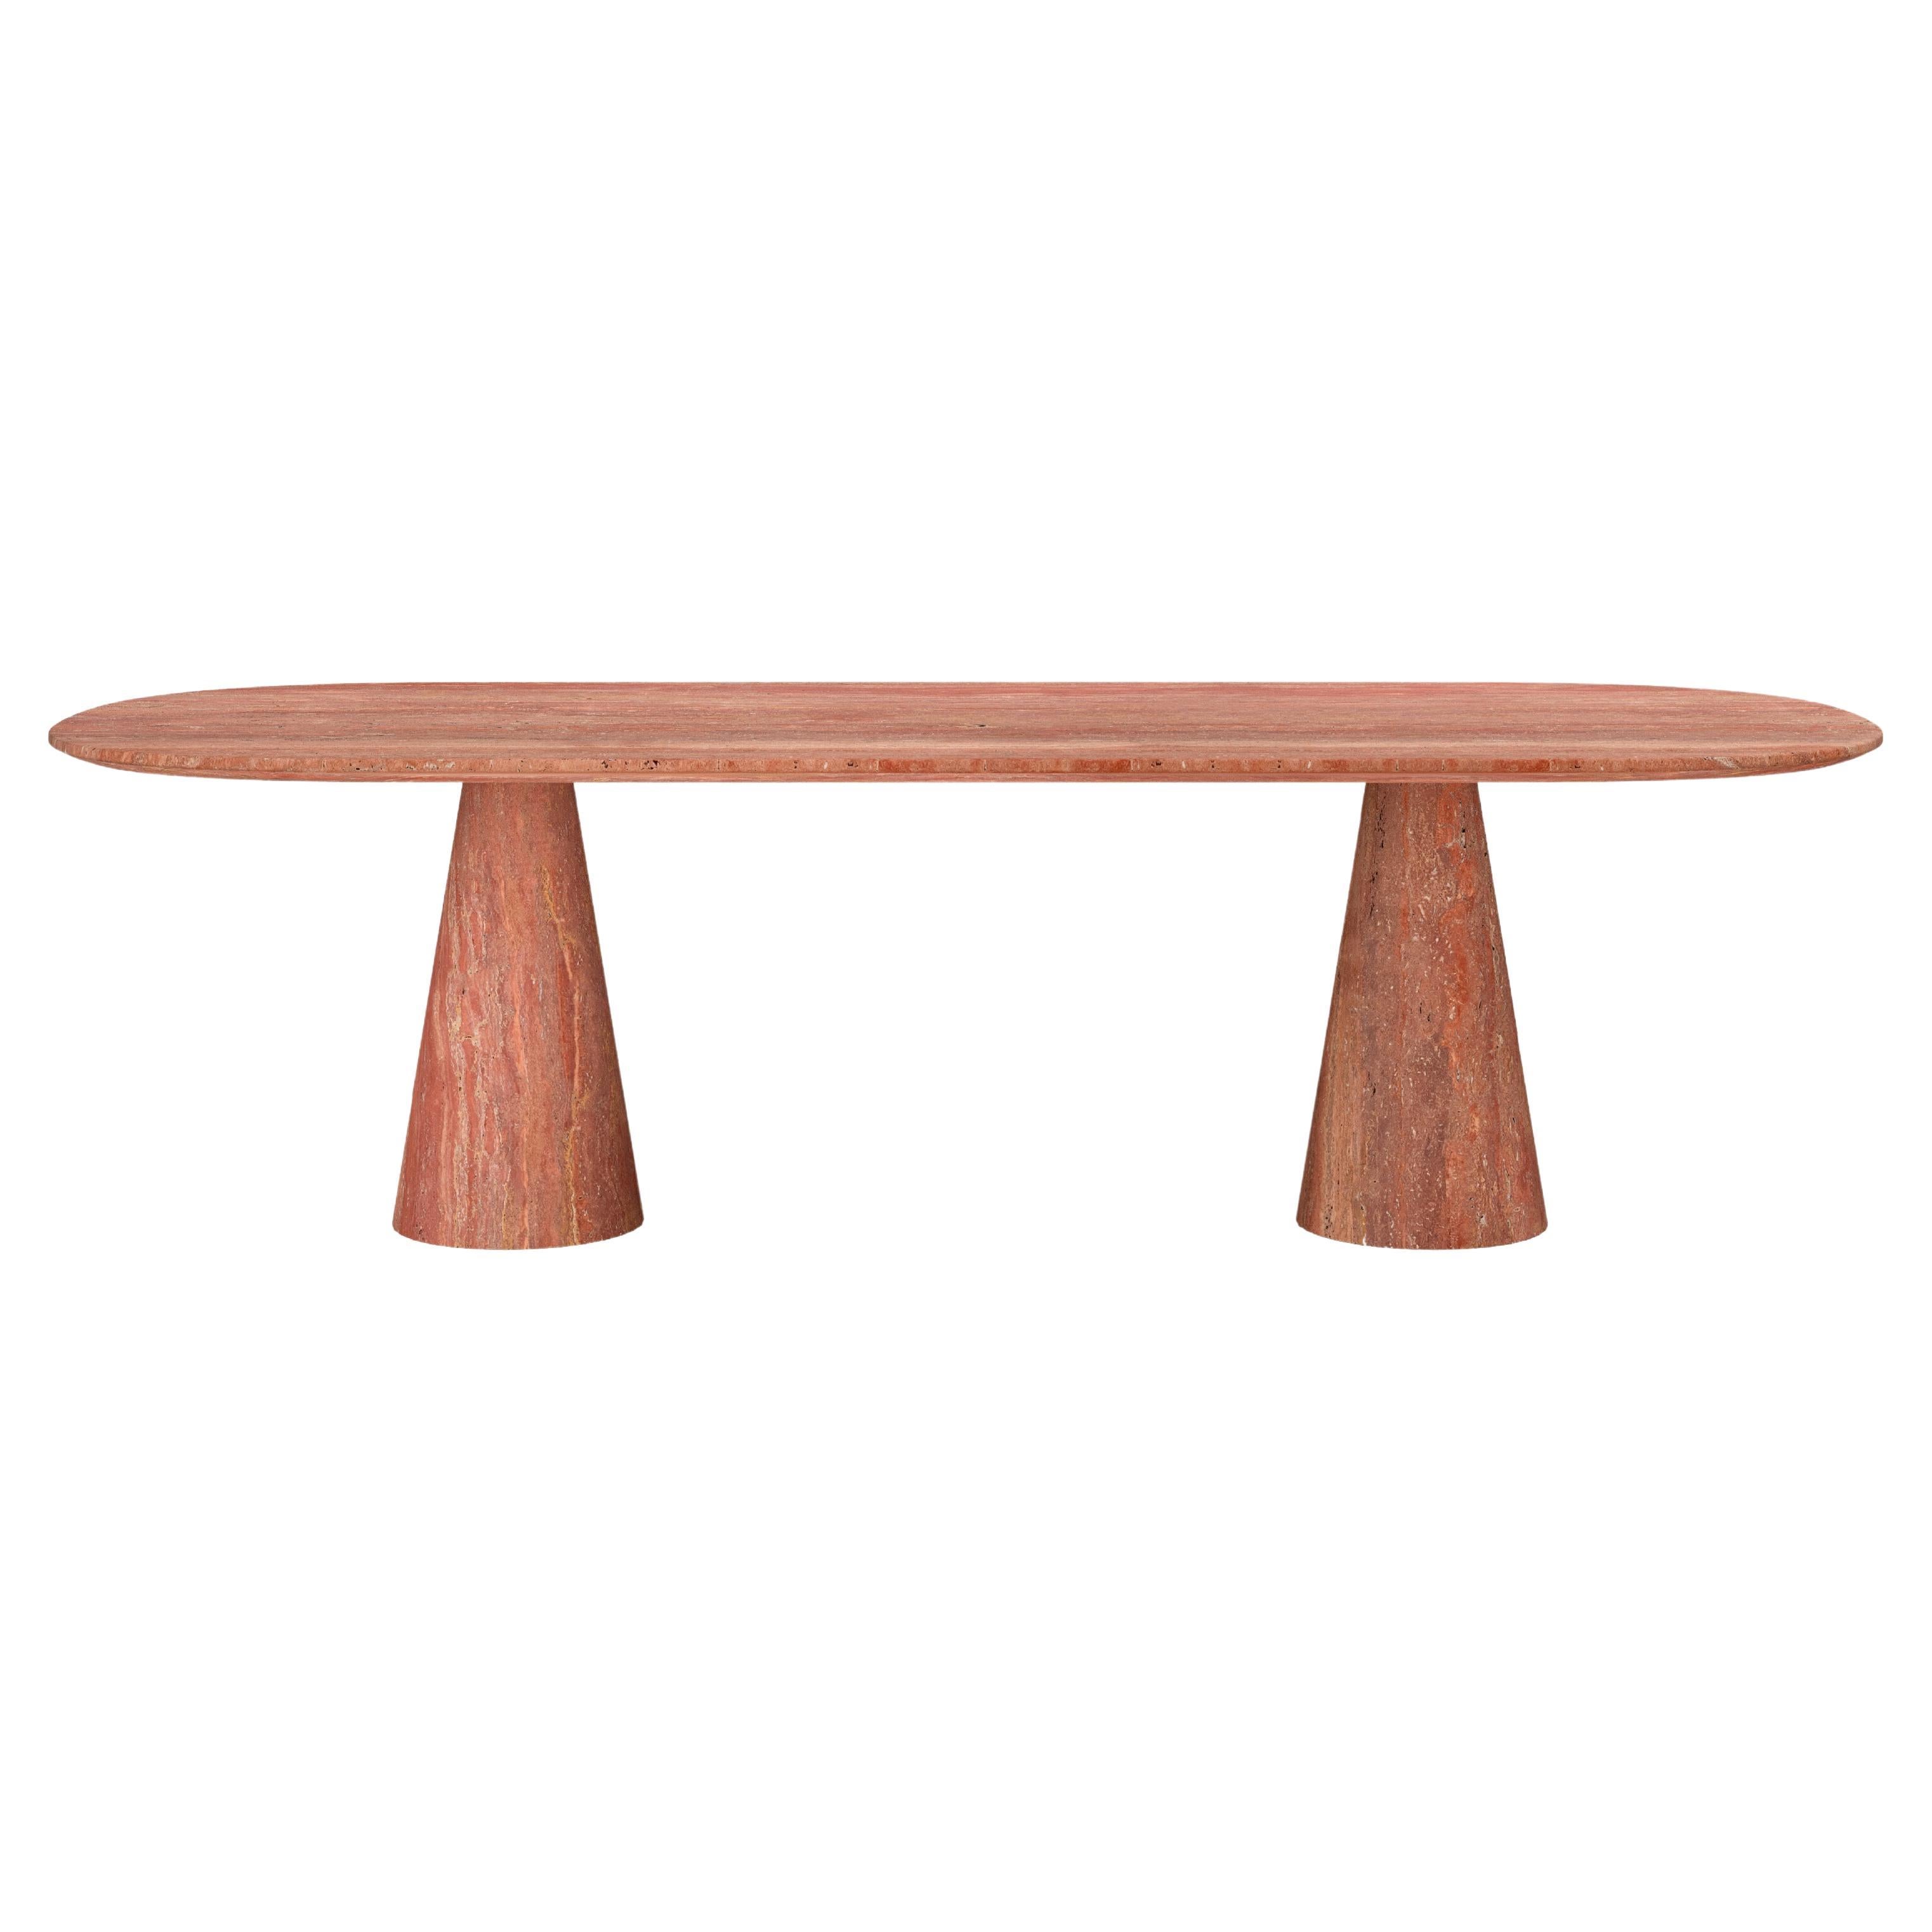 FORM(LA) Cono Oval Dining Table 118”L x 48”W x 30”H Travertino Rosso VC For Sale